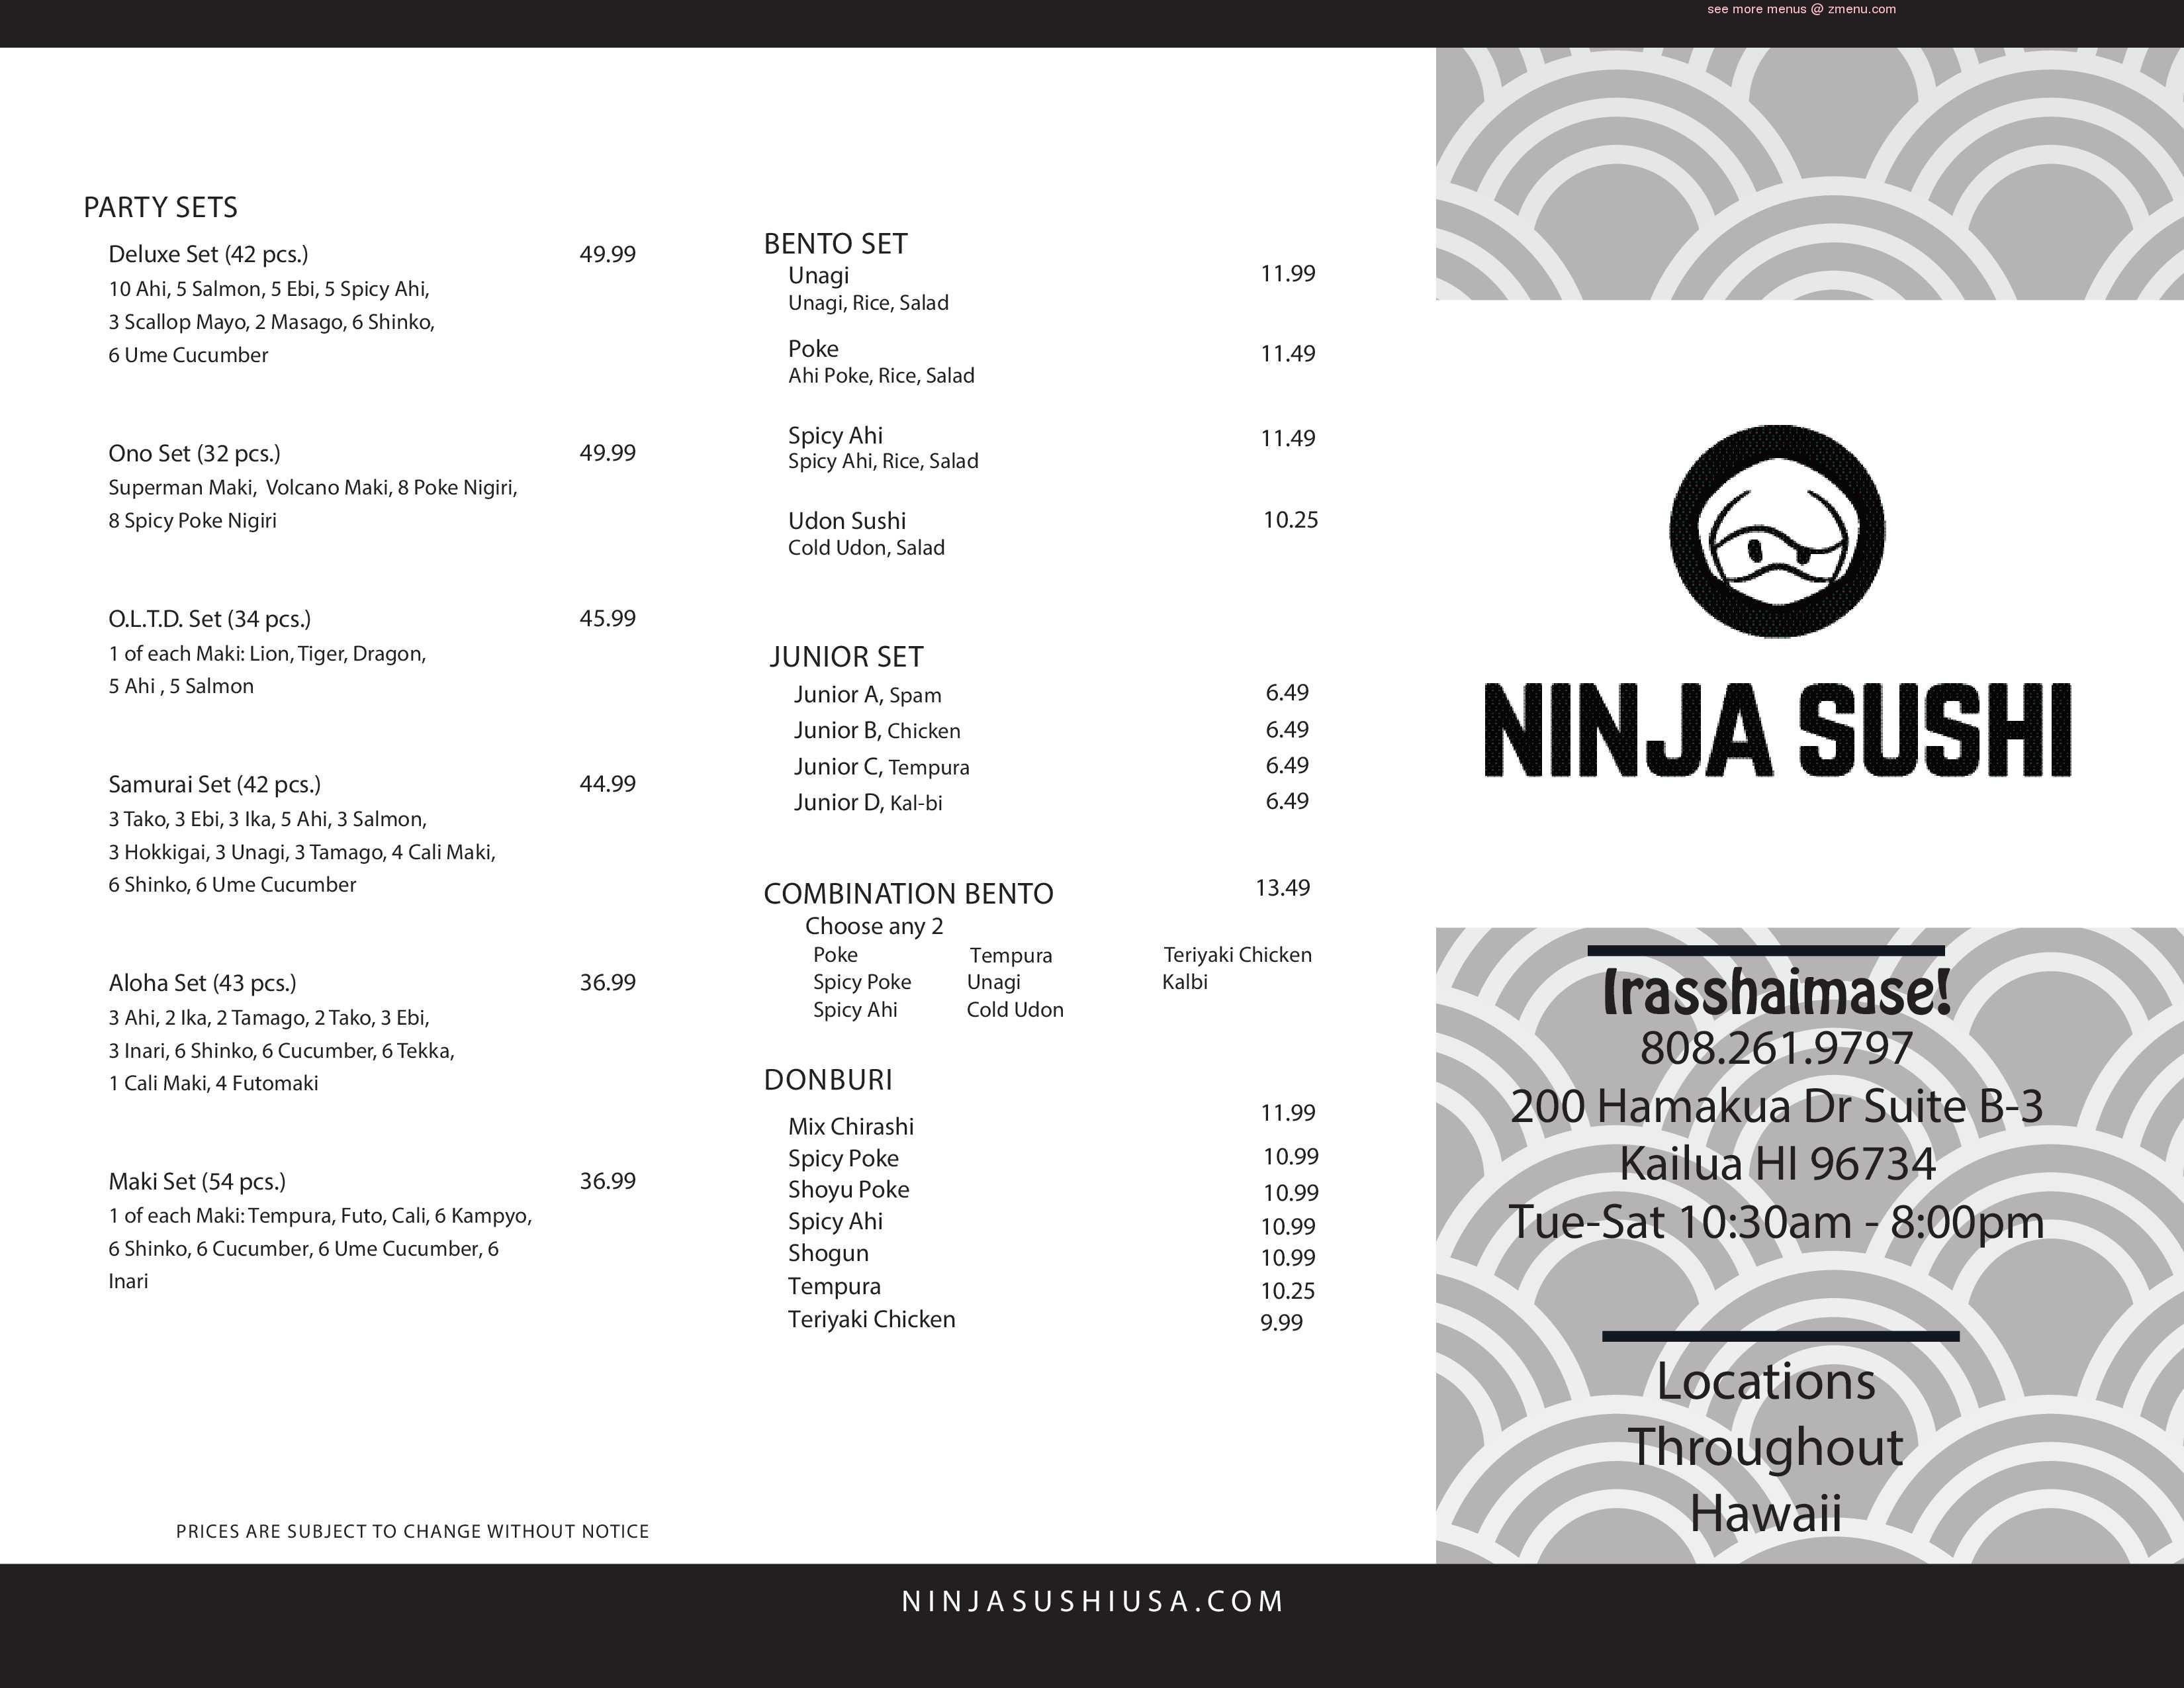 Ninja Sushi 200 Hamakua Dr b3, Kailua, HI 96734